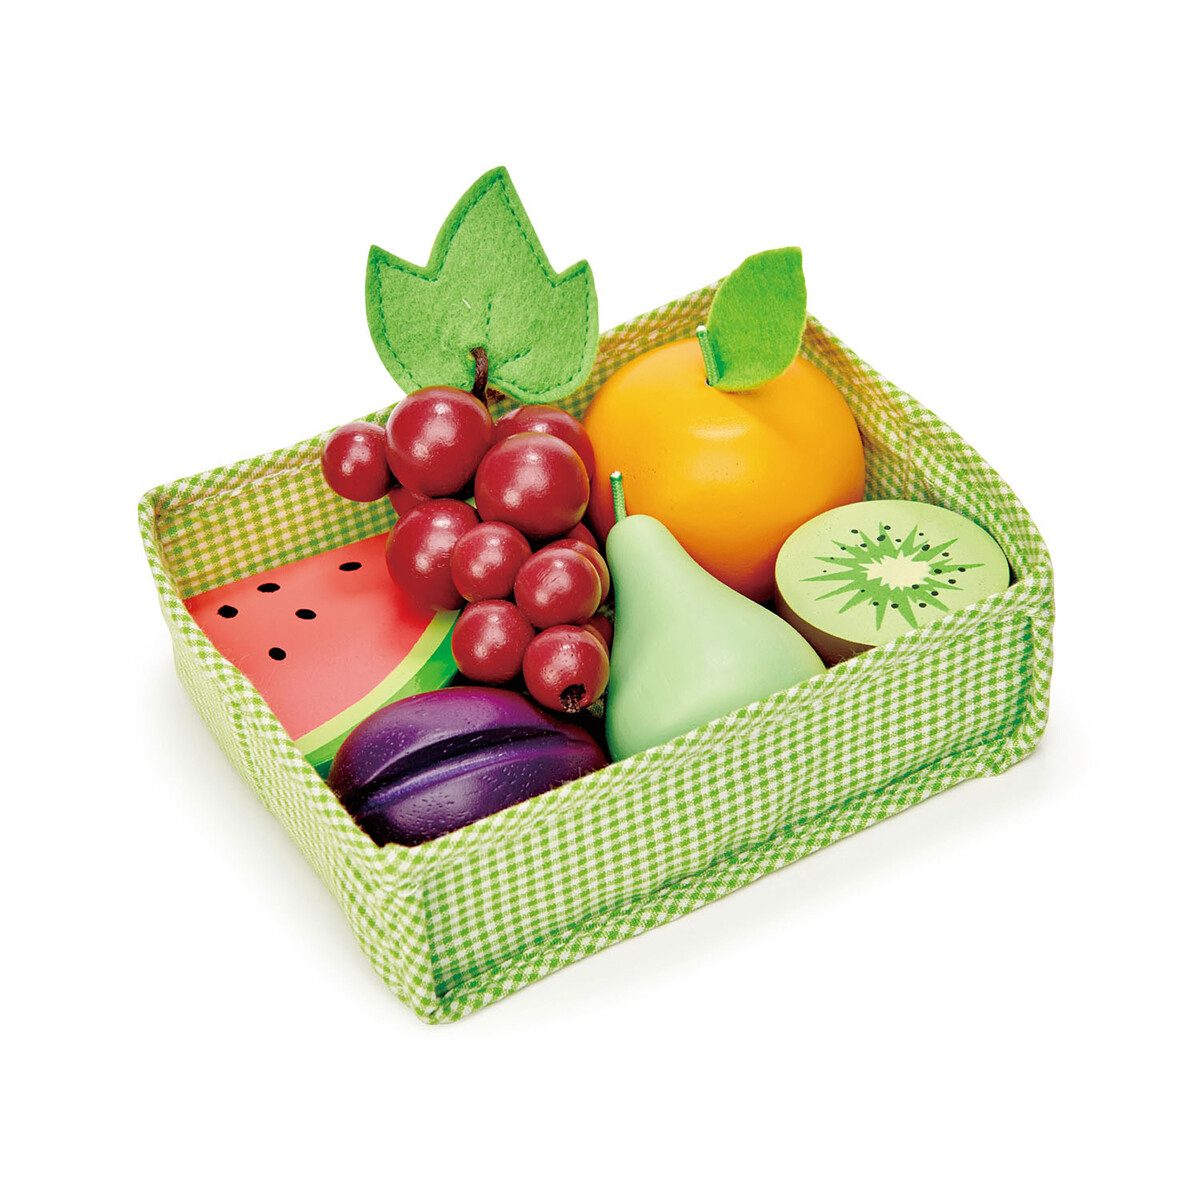 Fruit Crate